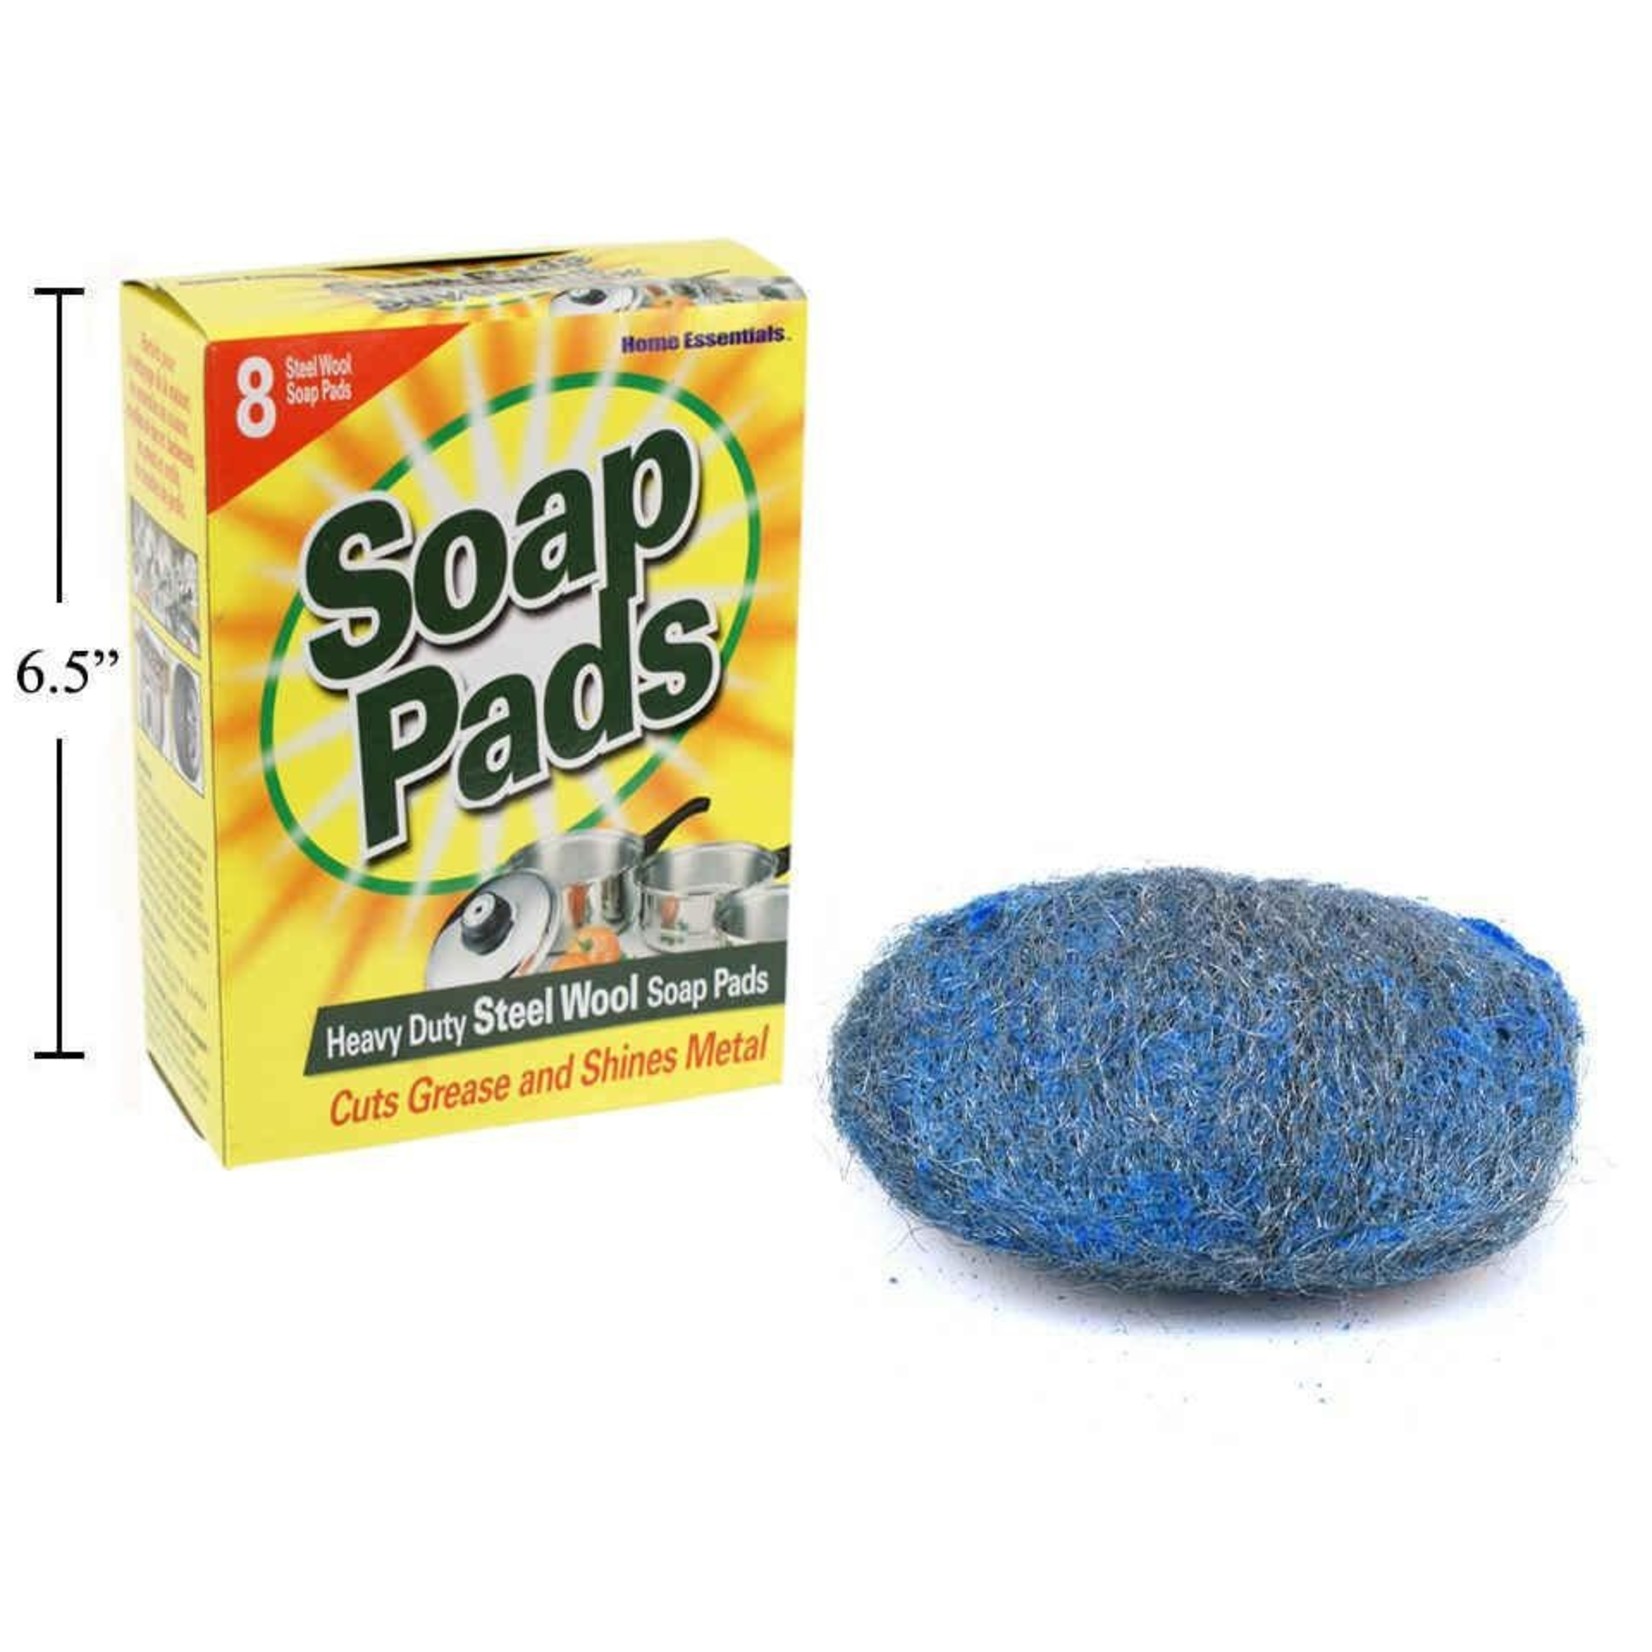 STEEL WOOL SOAP PADS HEAVY DUTY 8 PCS